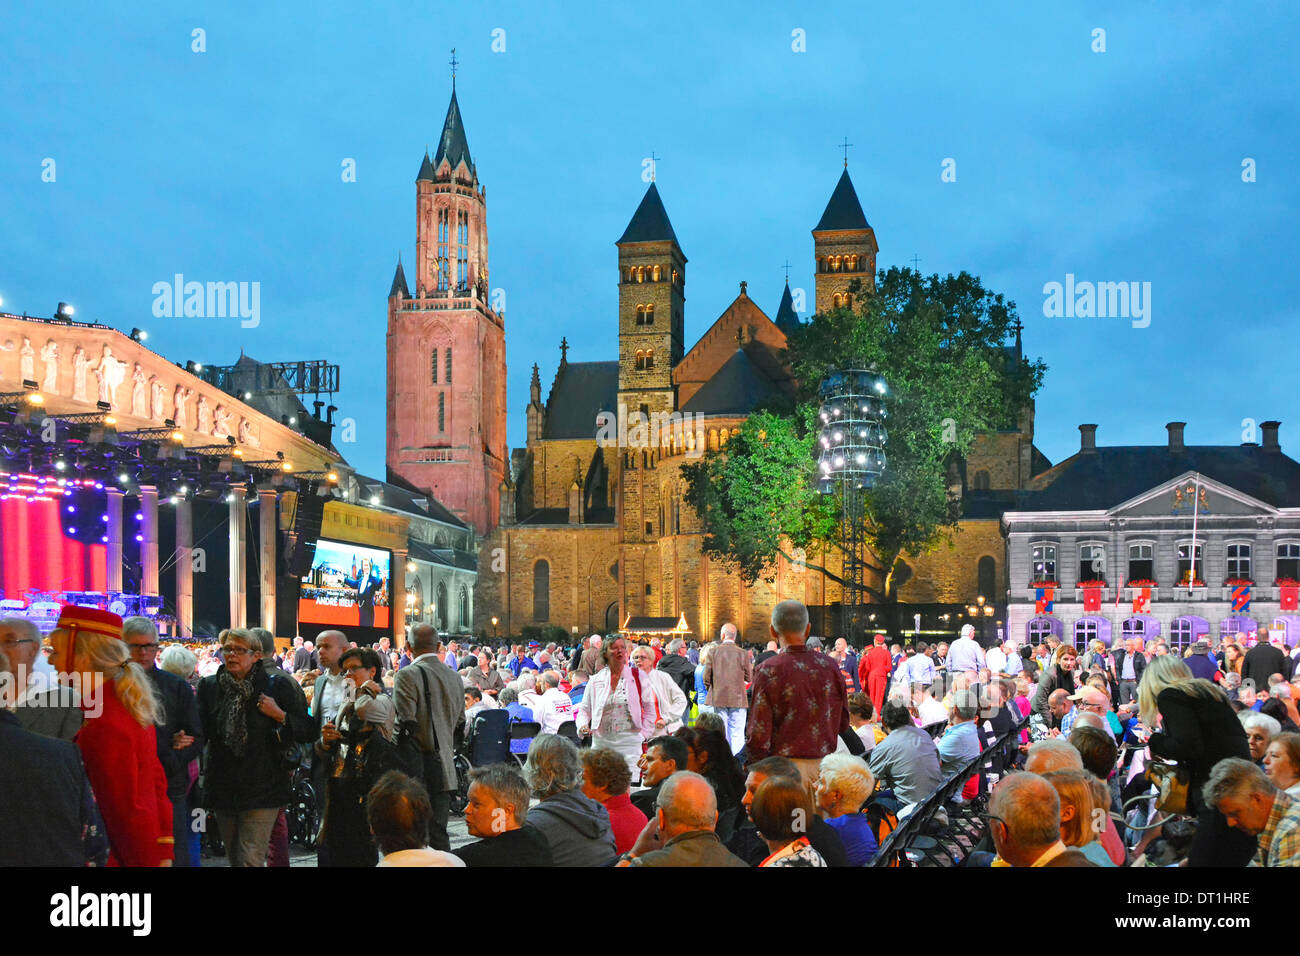 Maastricht Vrijthof Square André Rieu intervallo di concerti musicali luglio caldo tramonto d'estate sera torri e guglie storiche della chiesa in Limburgo Paesi Bassi UE Foto Stock